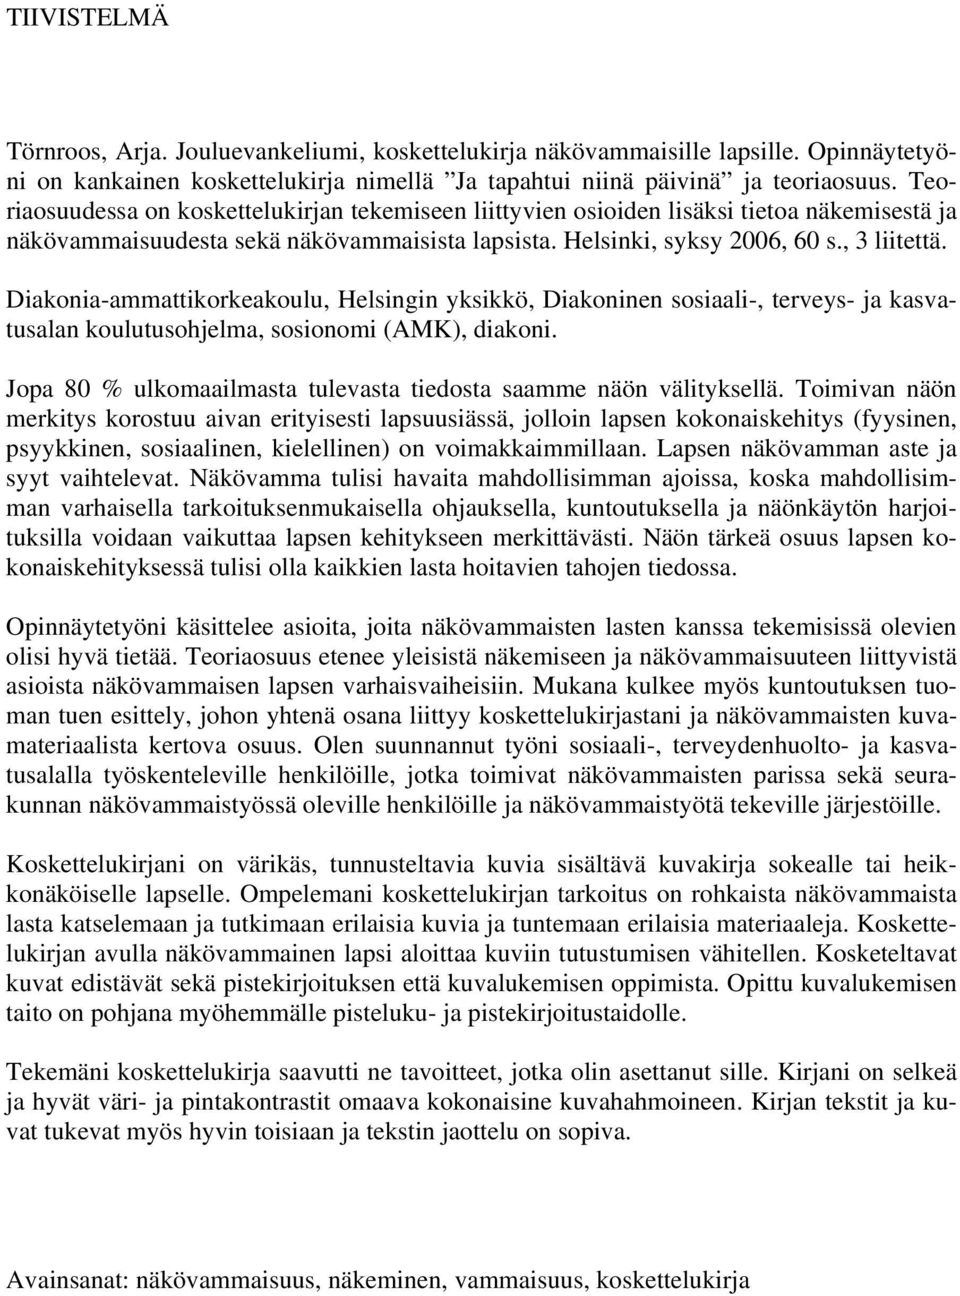 Diakonia-ammattikorkeakoulu, Helsingin yksikkö, Diakoninen sosiaali-, terveys- ja kasvatusalan koulutusohjelma, sosionomi (AMK), diakoni.